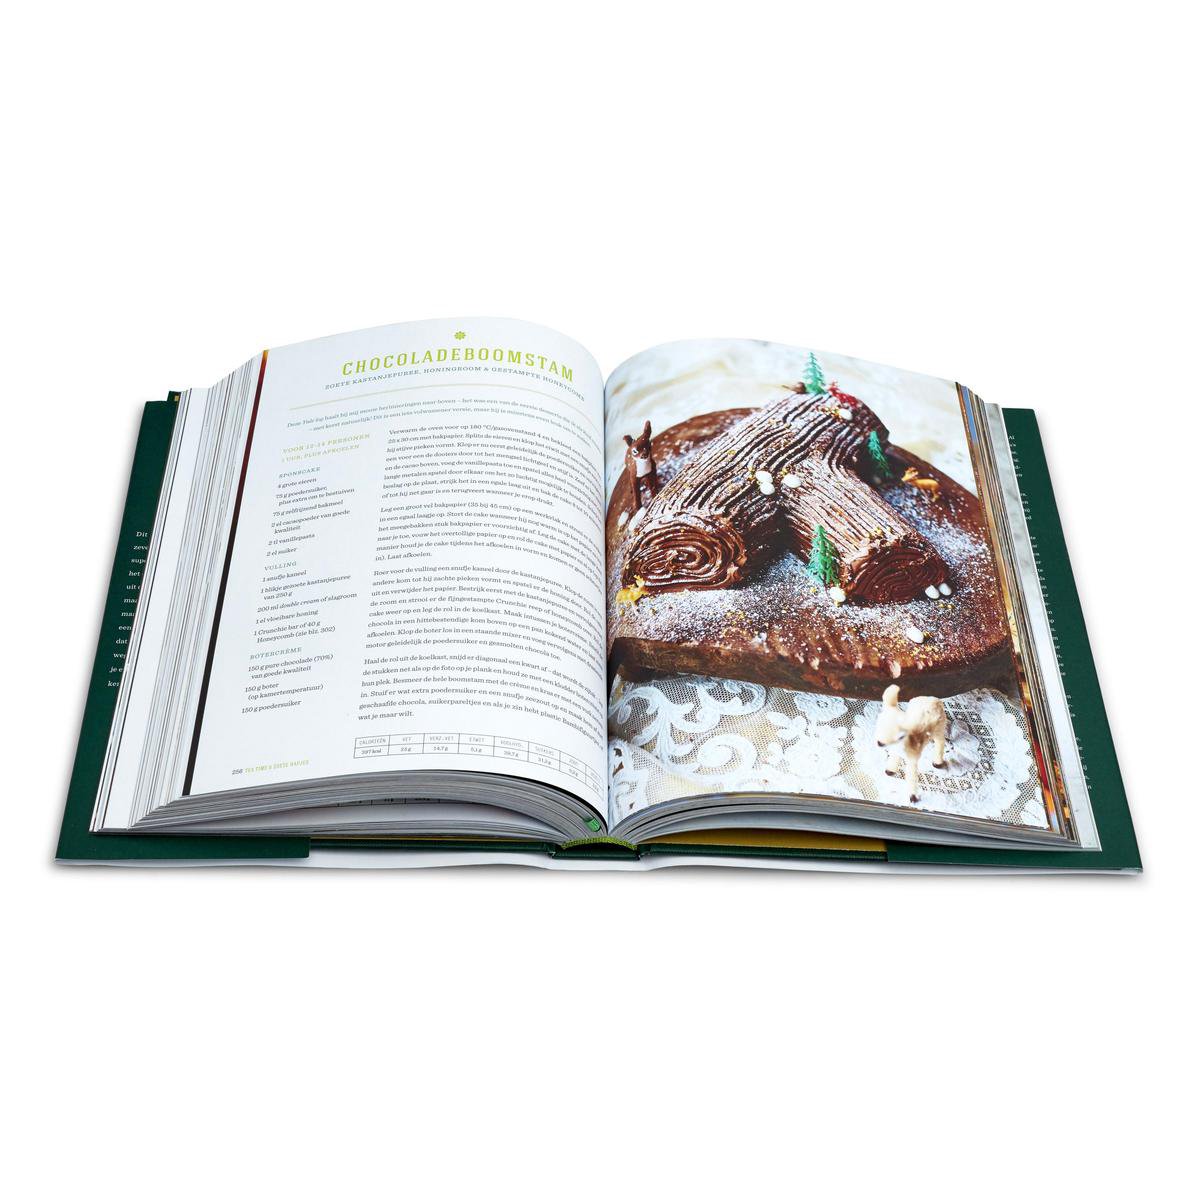 Tom Audreath Dag oog Jamie Oliver's kerstkookboek, Jamie Oliver | 9789021567471 | Boeken |  bol.com